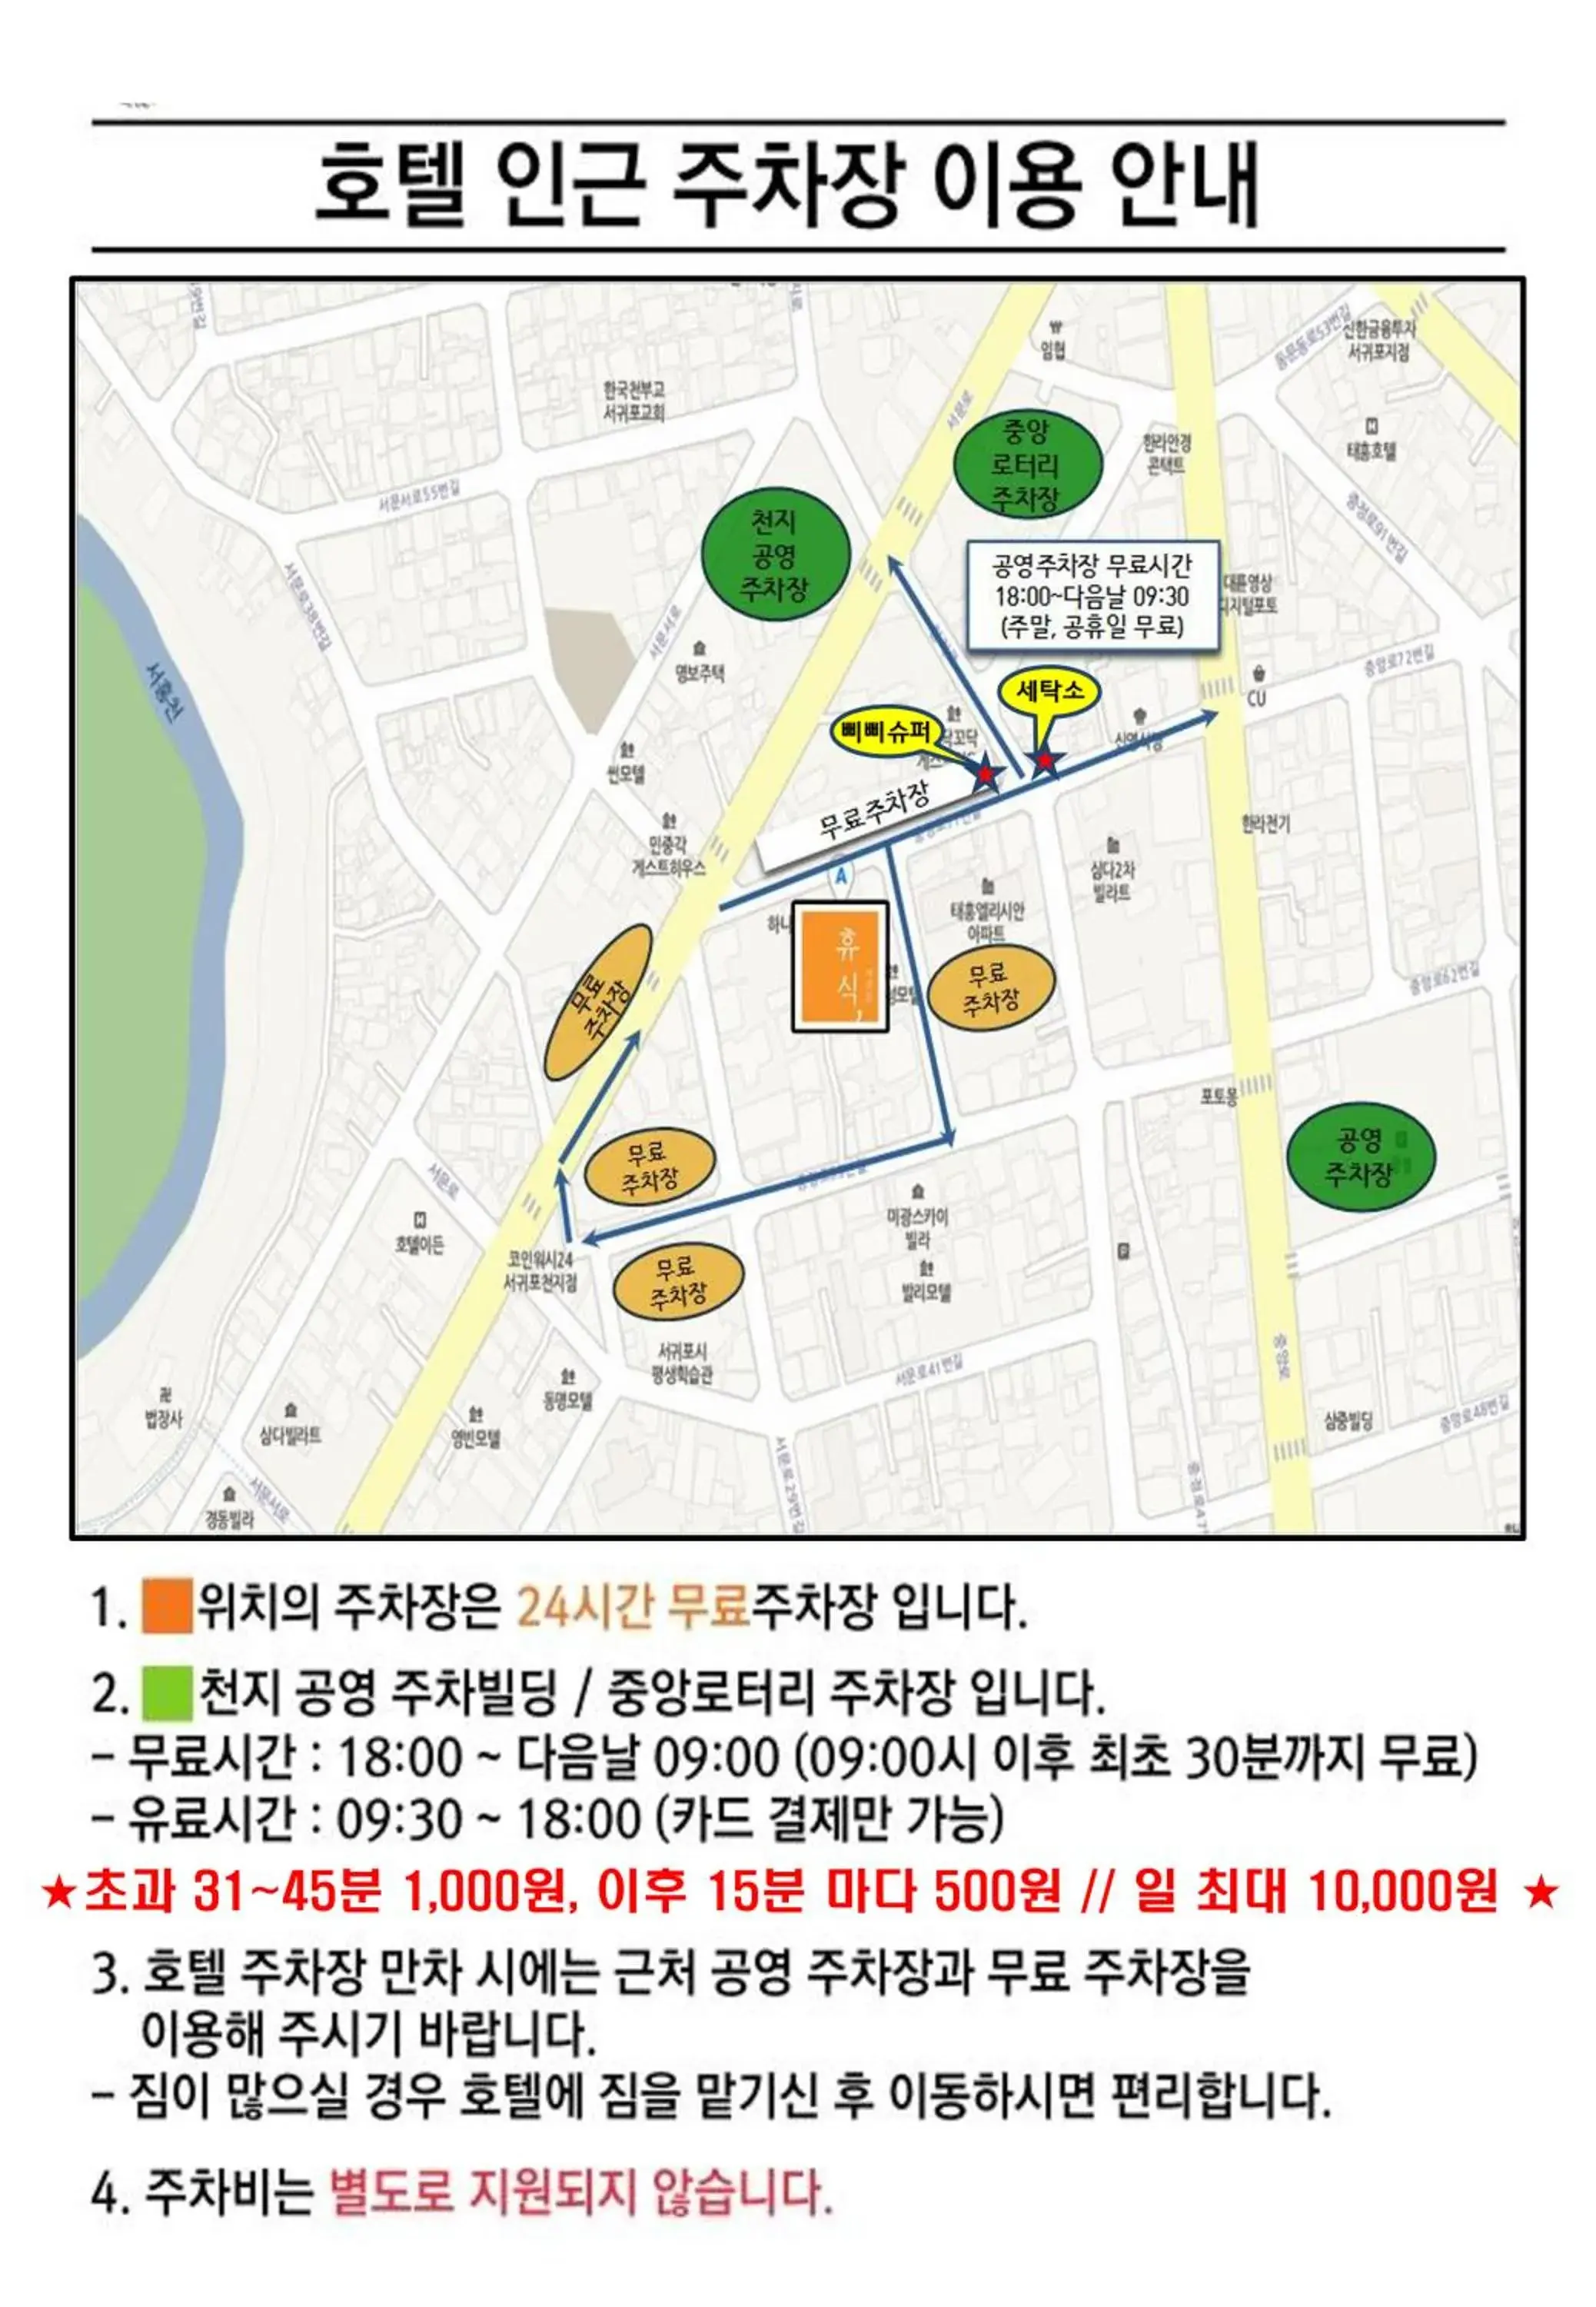 Parking, Bird's-eye View in Hotel Rest Seogwipo